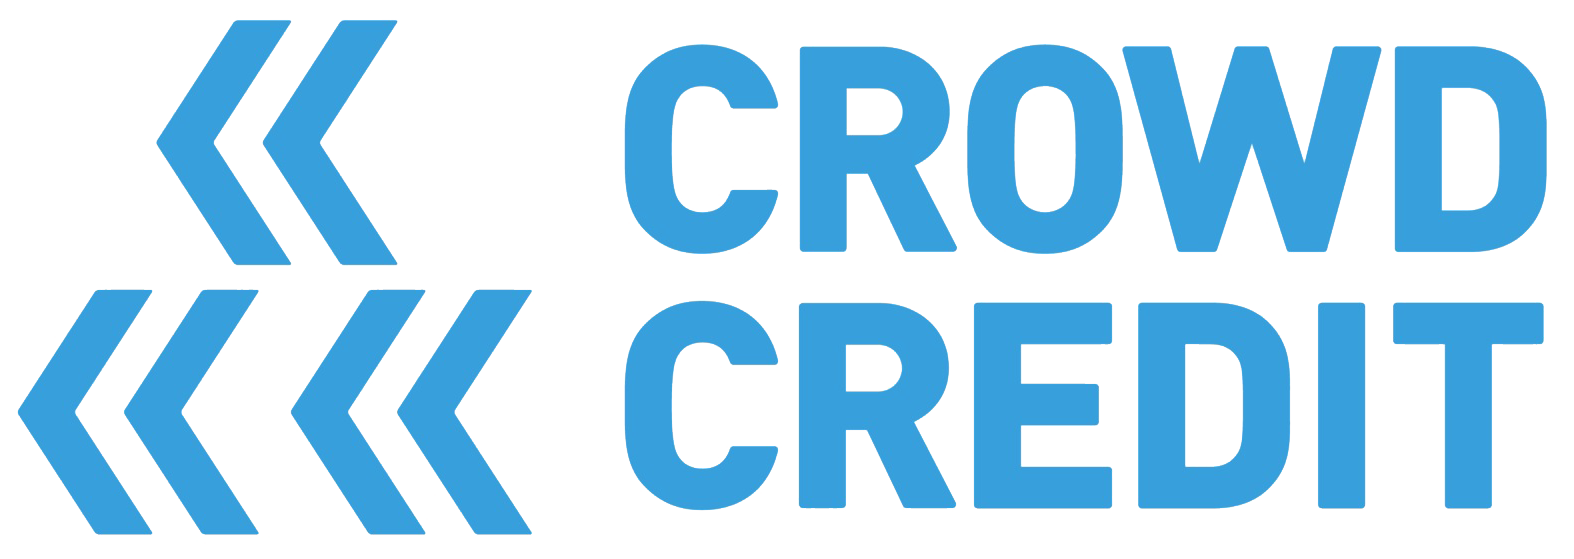 Crowdcredit (1).png